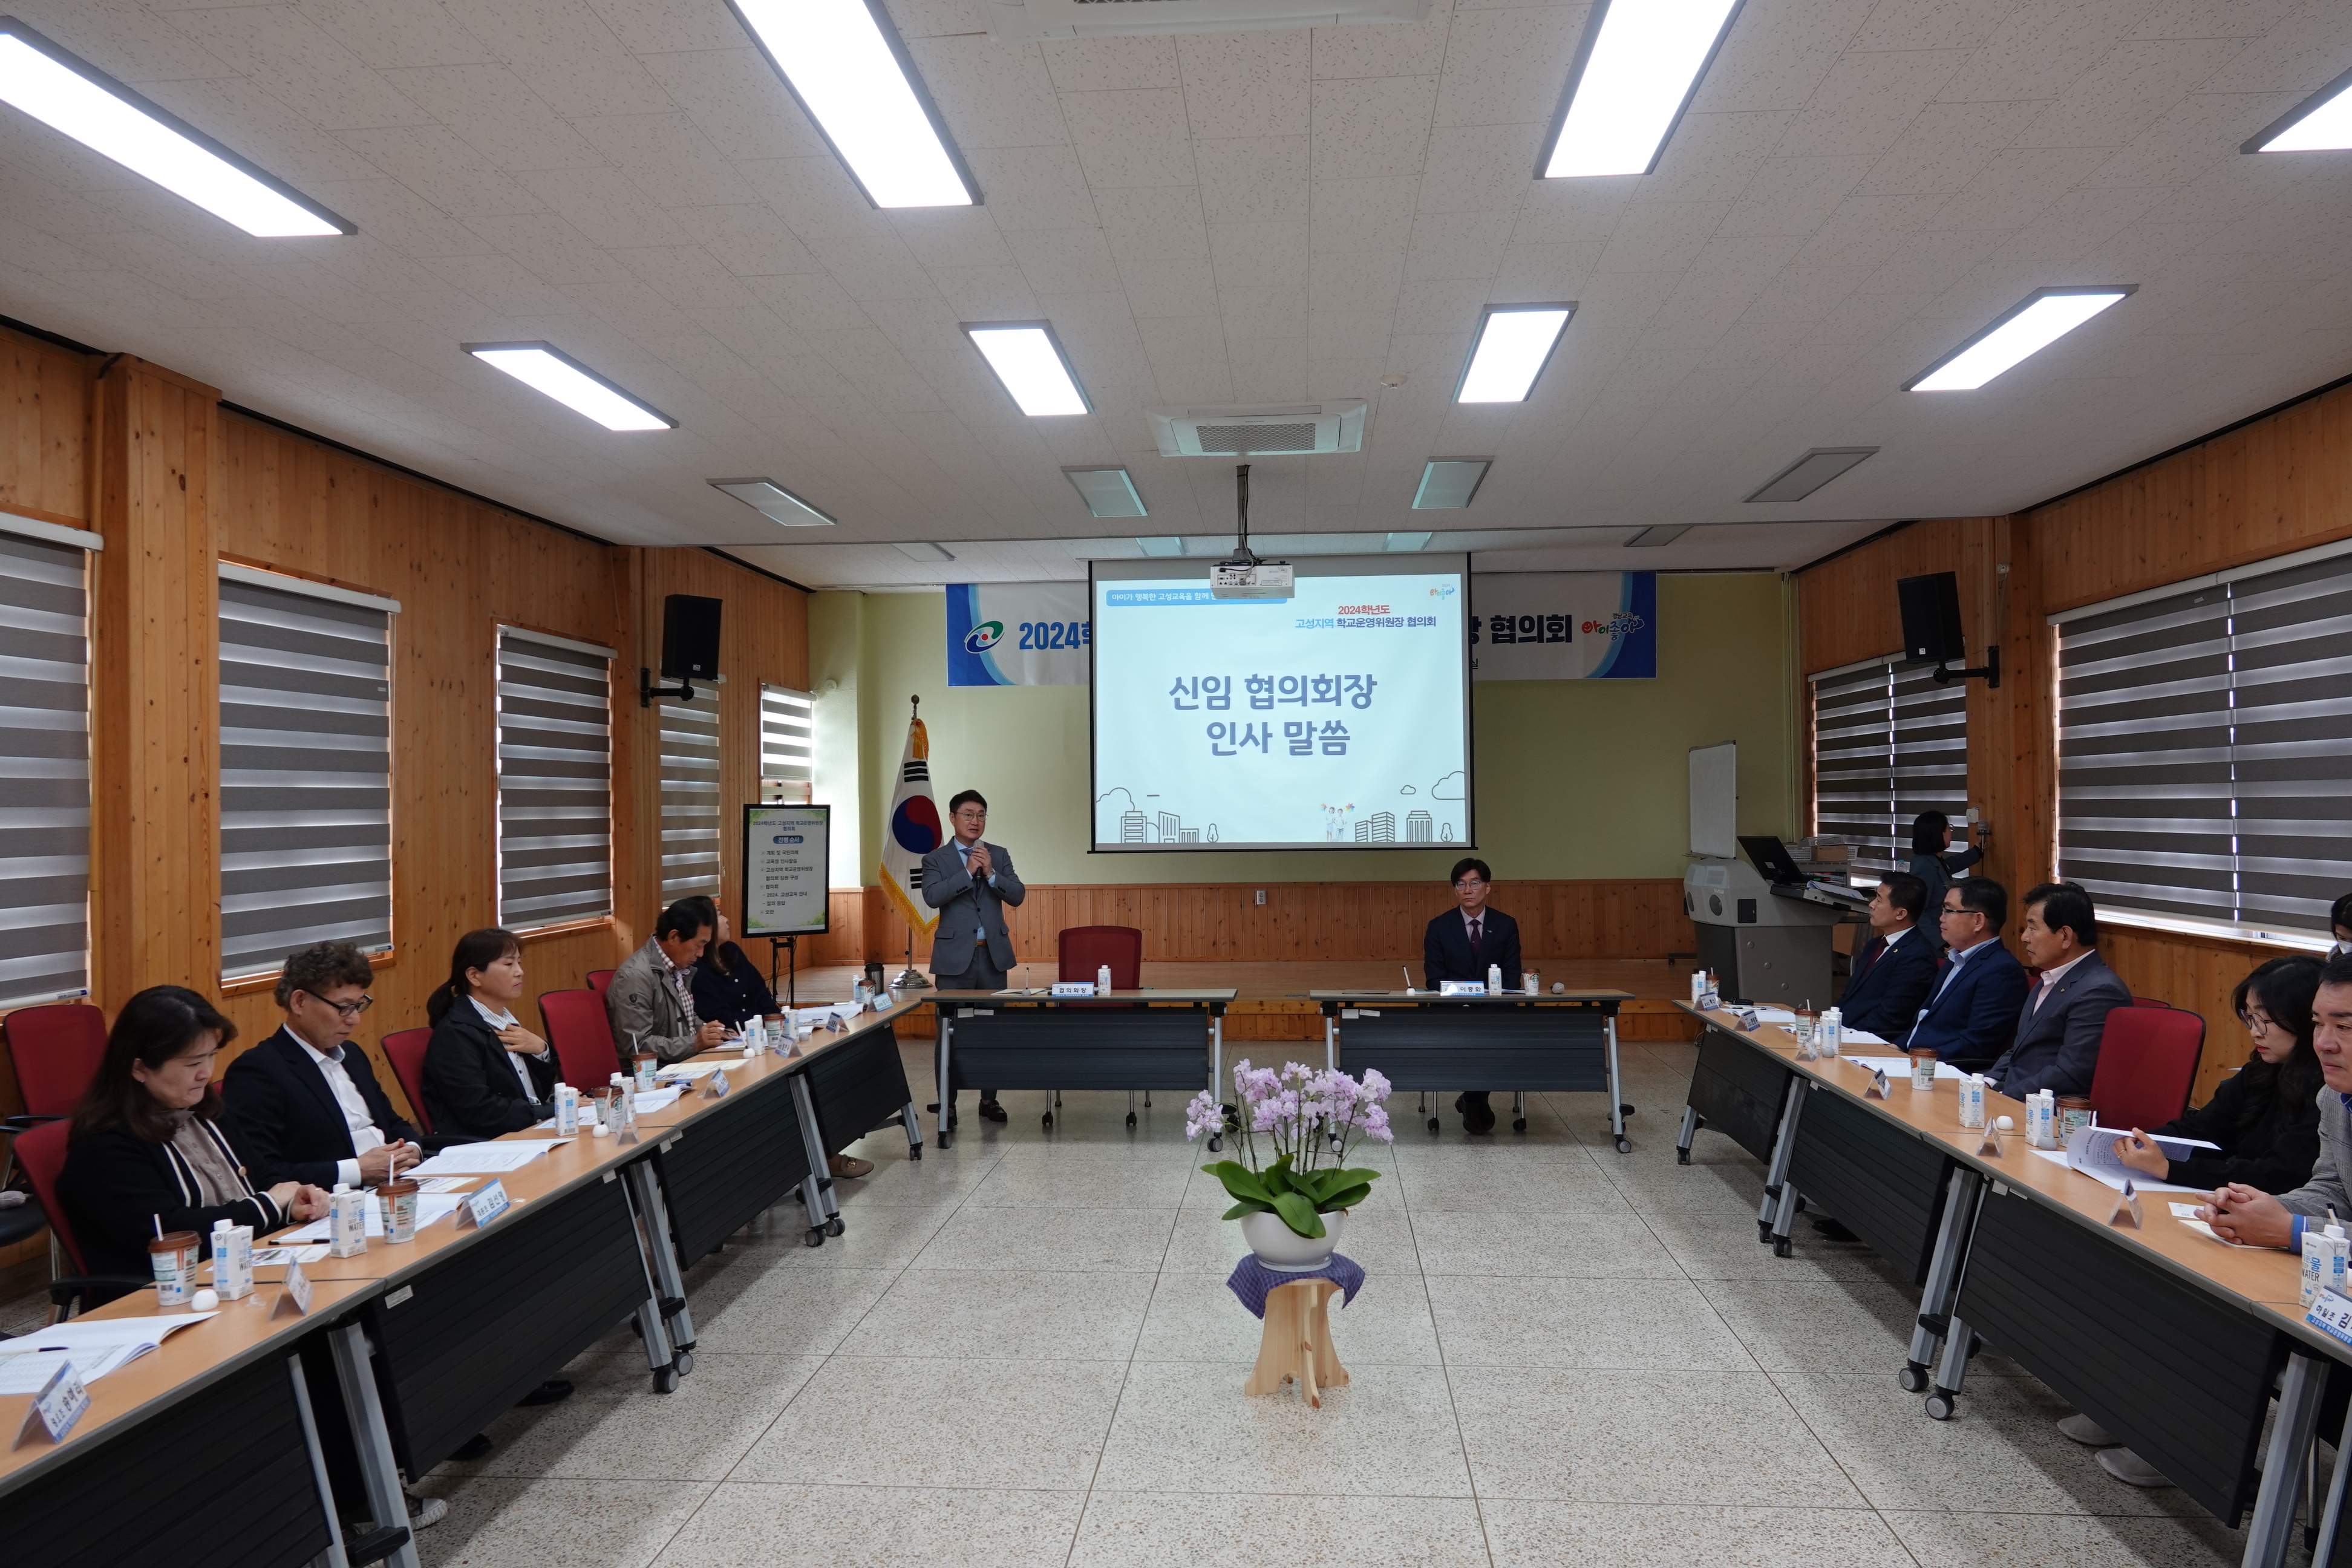 
															
															
																
																	고성교육지원청, 2024학년도 고성지역  학교운영위원장 협의회 개최 [2번째 이미지]
																
																
															
														